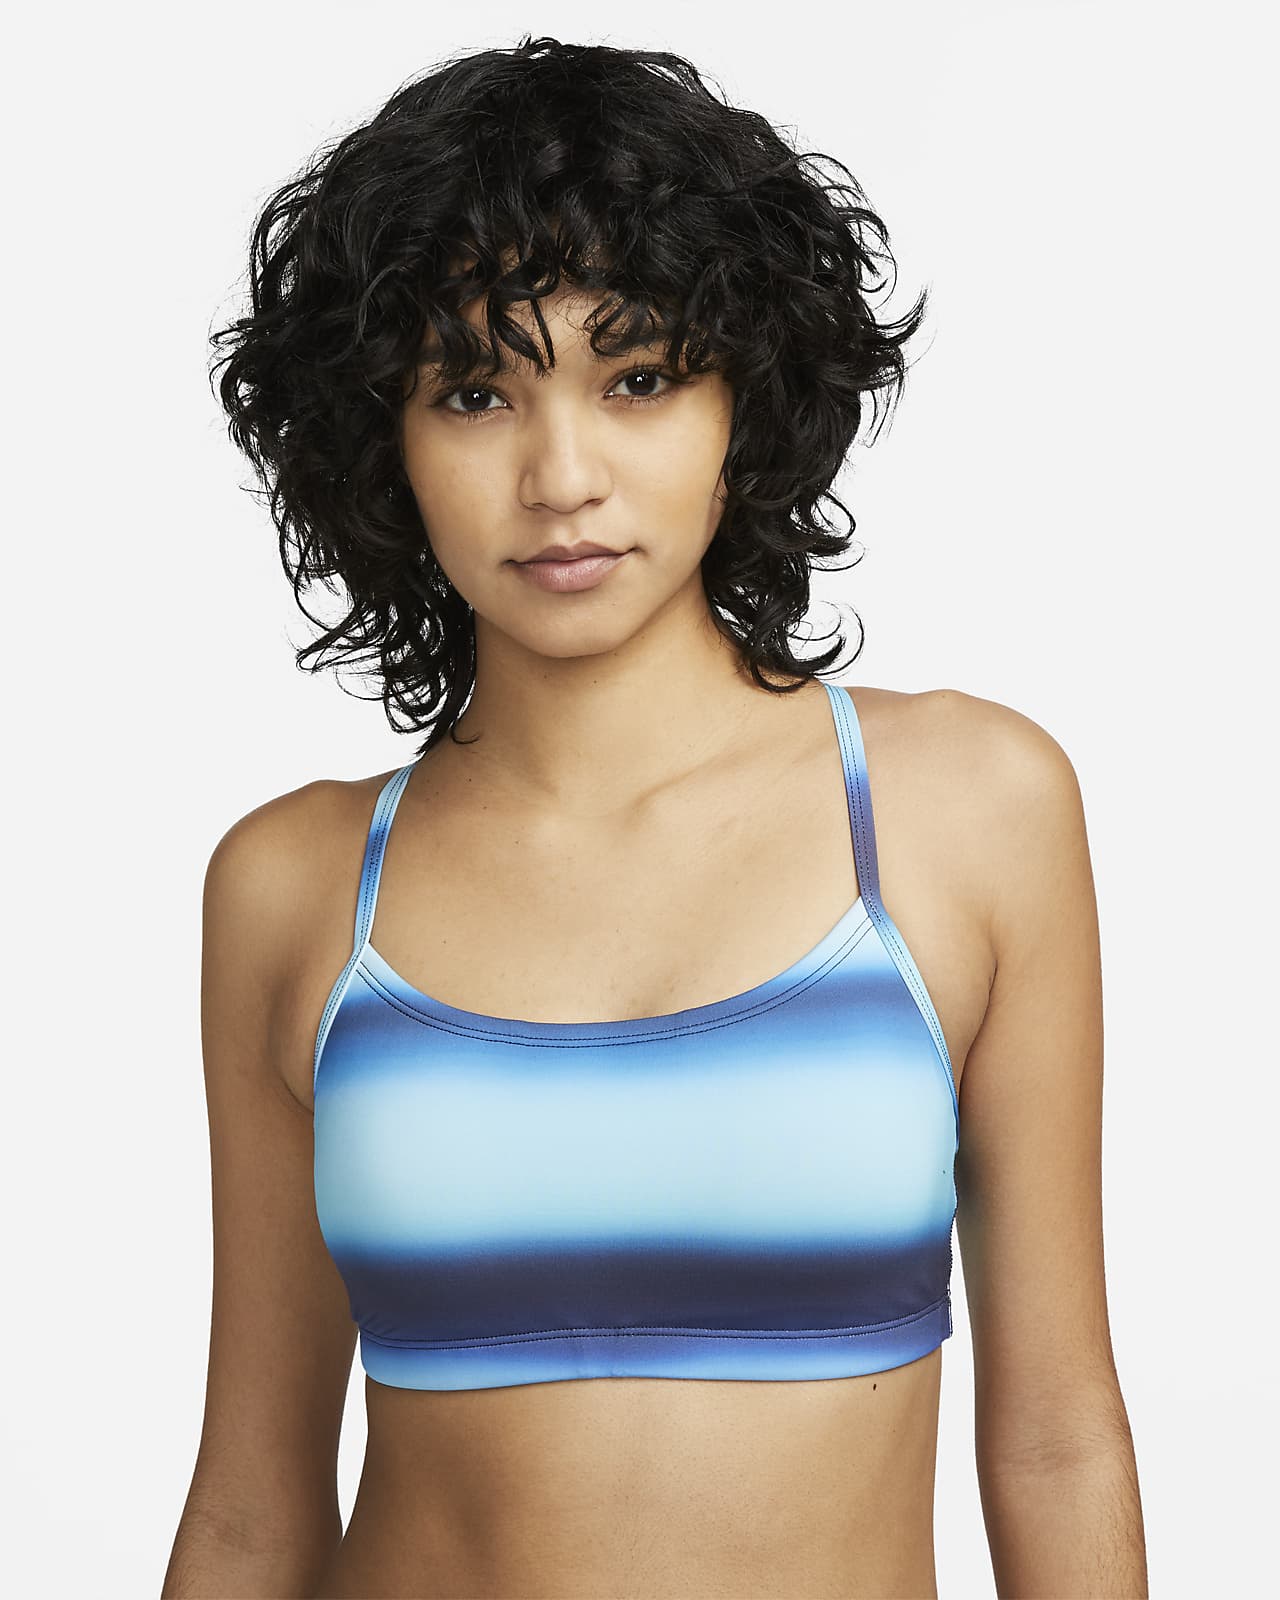 Nike Swim Women's Convertible Layered Tankini Top (Plus Size).